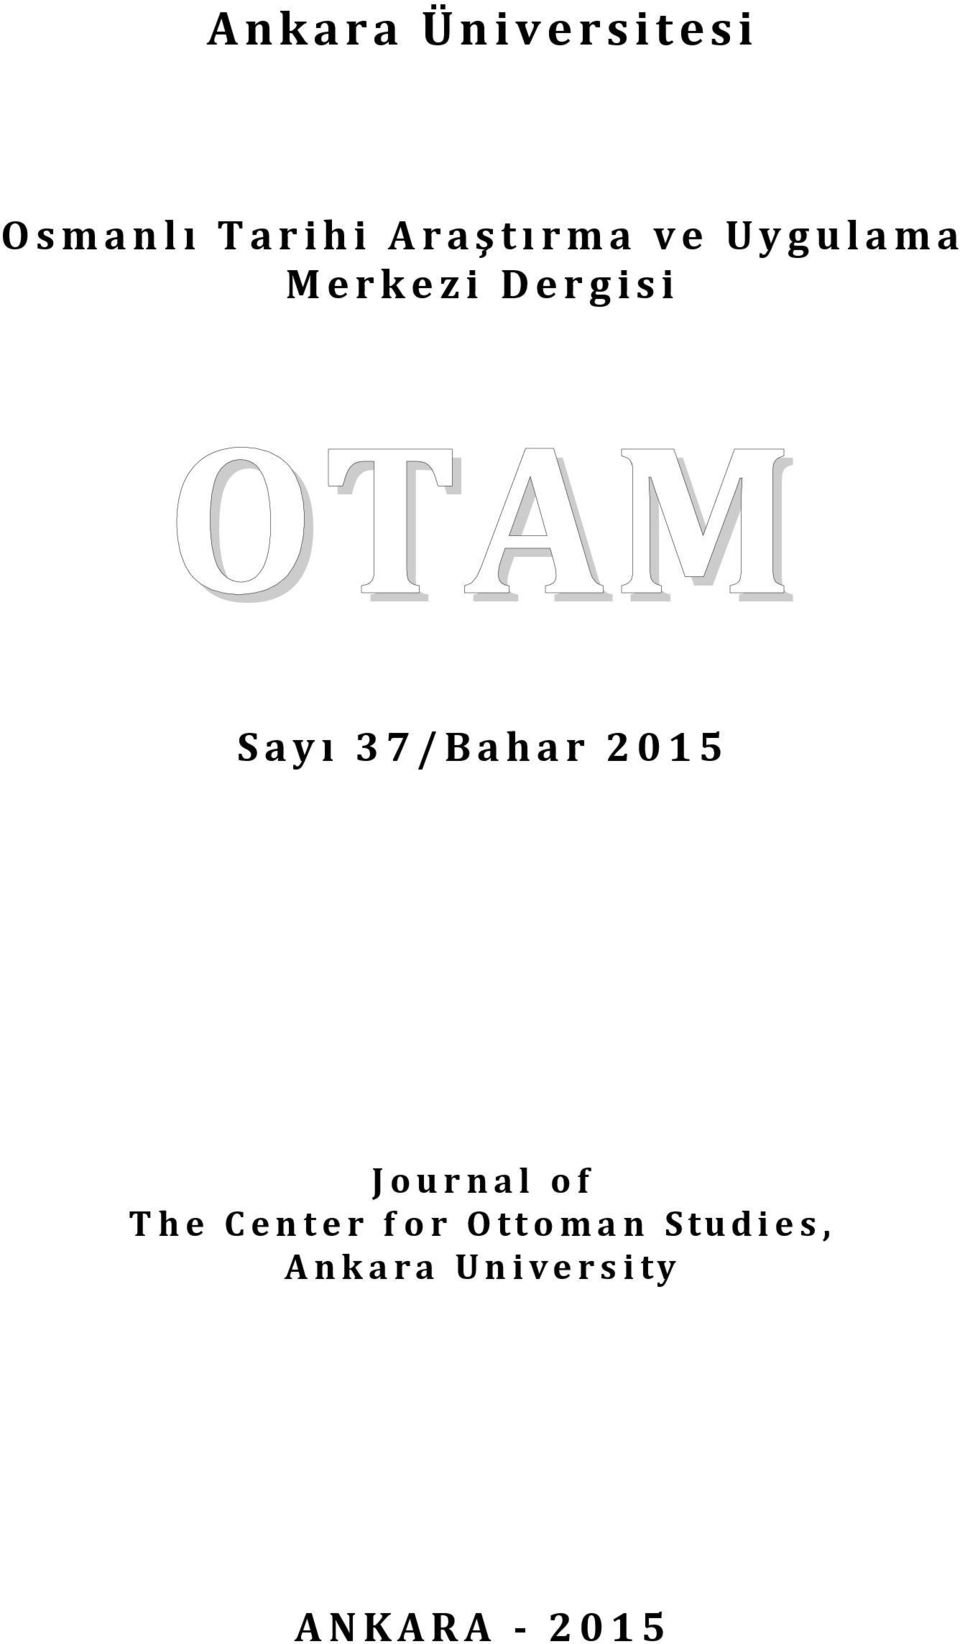 37/Bahar 2015 Journal of The Center for